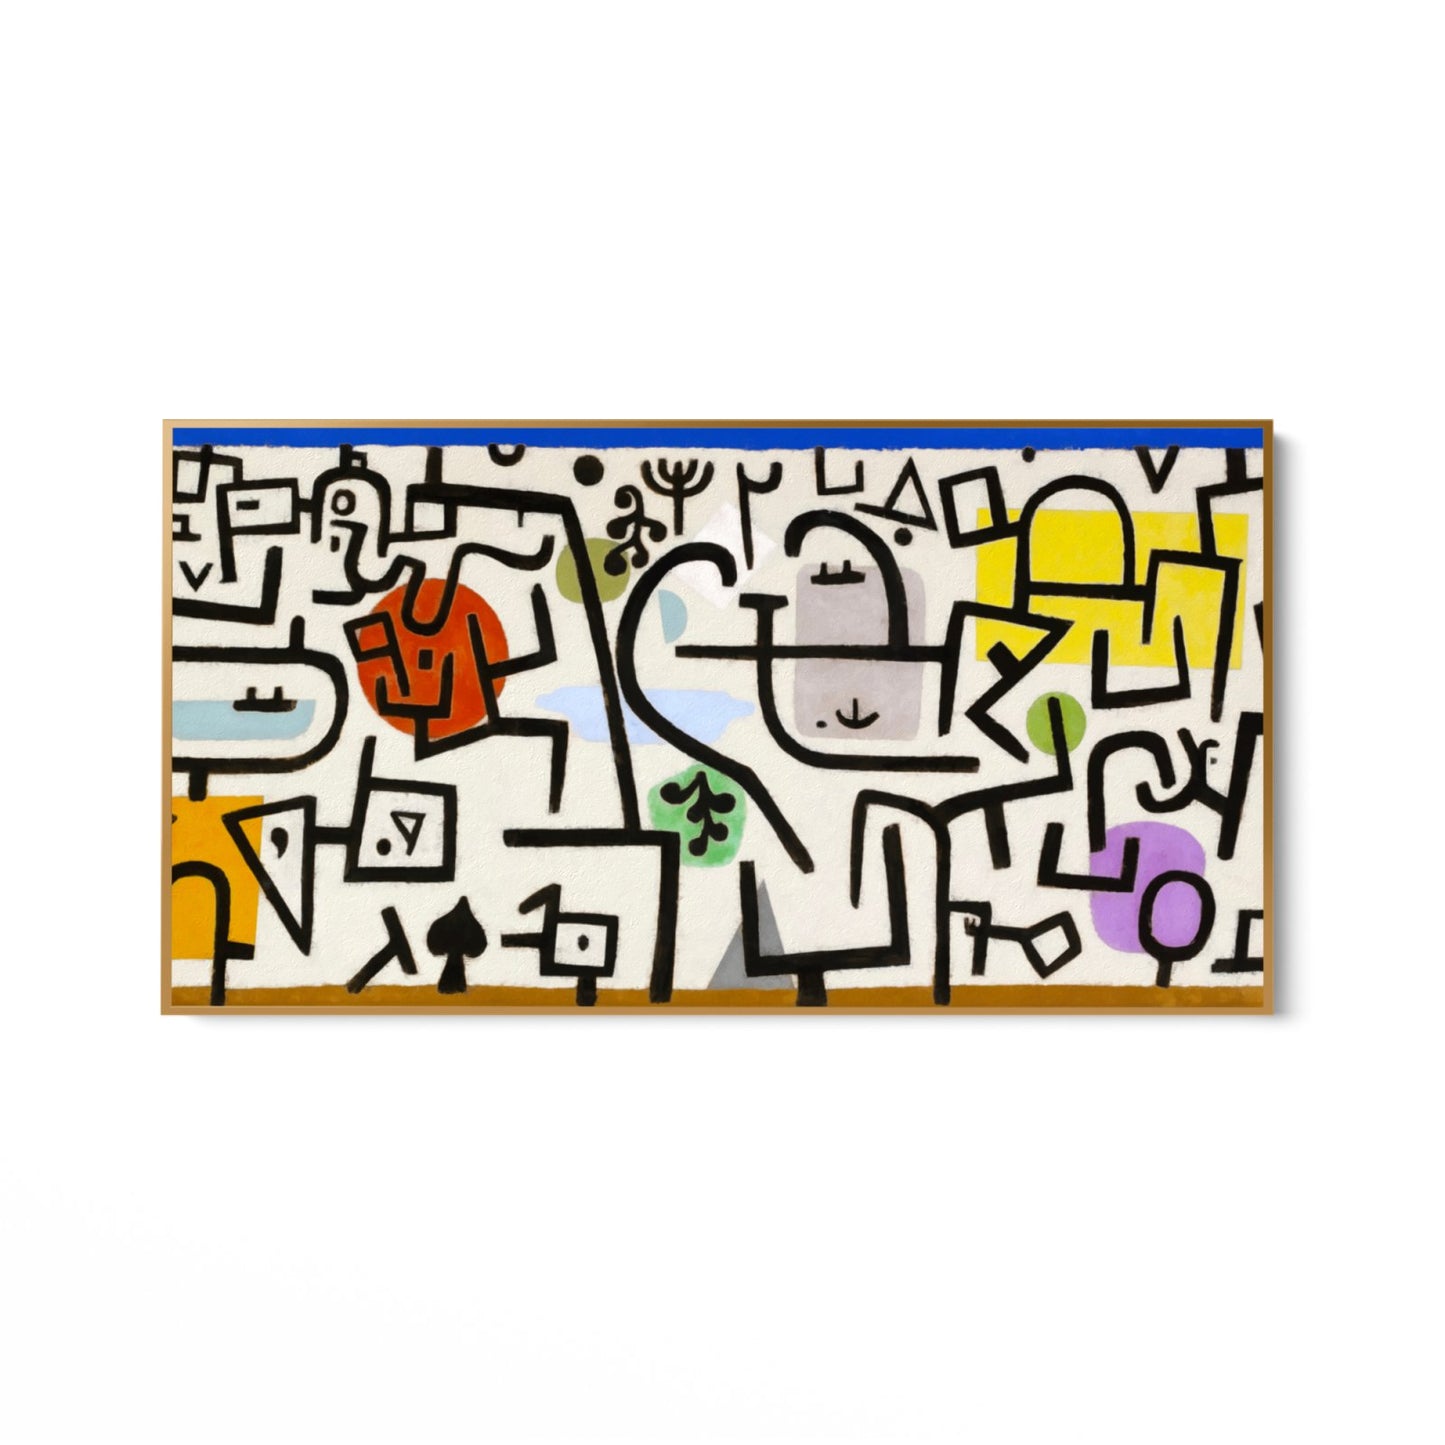 Paul Klee, Puerto Rico